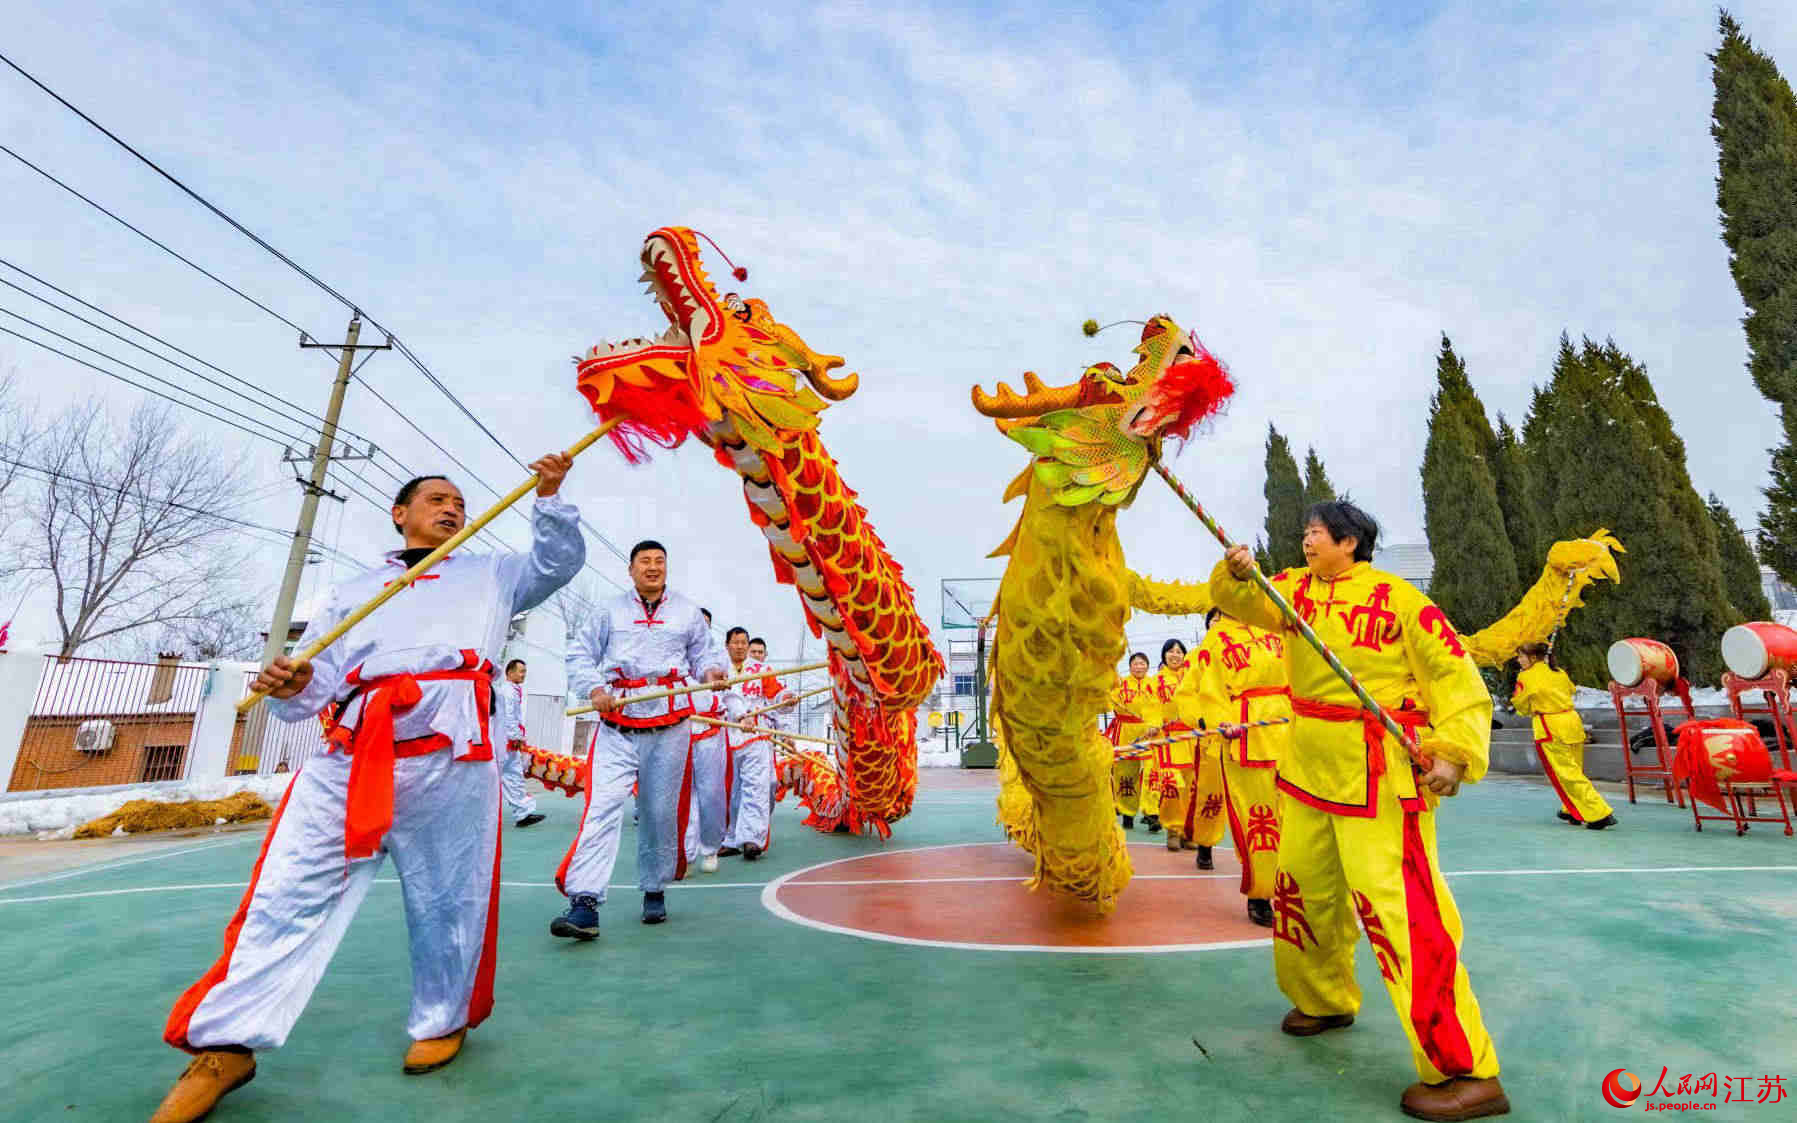 舞龙队为村民表演龙舞迎佳节。李文摄